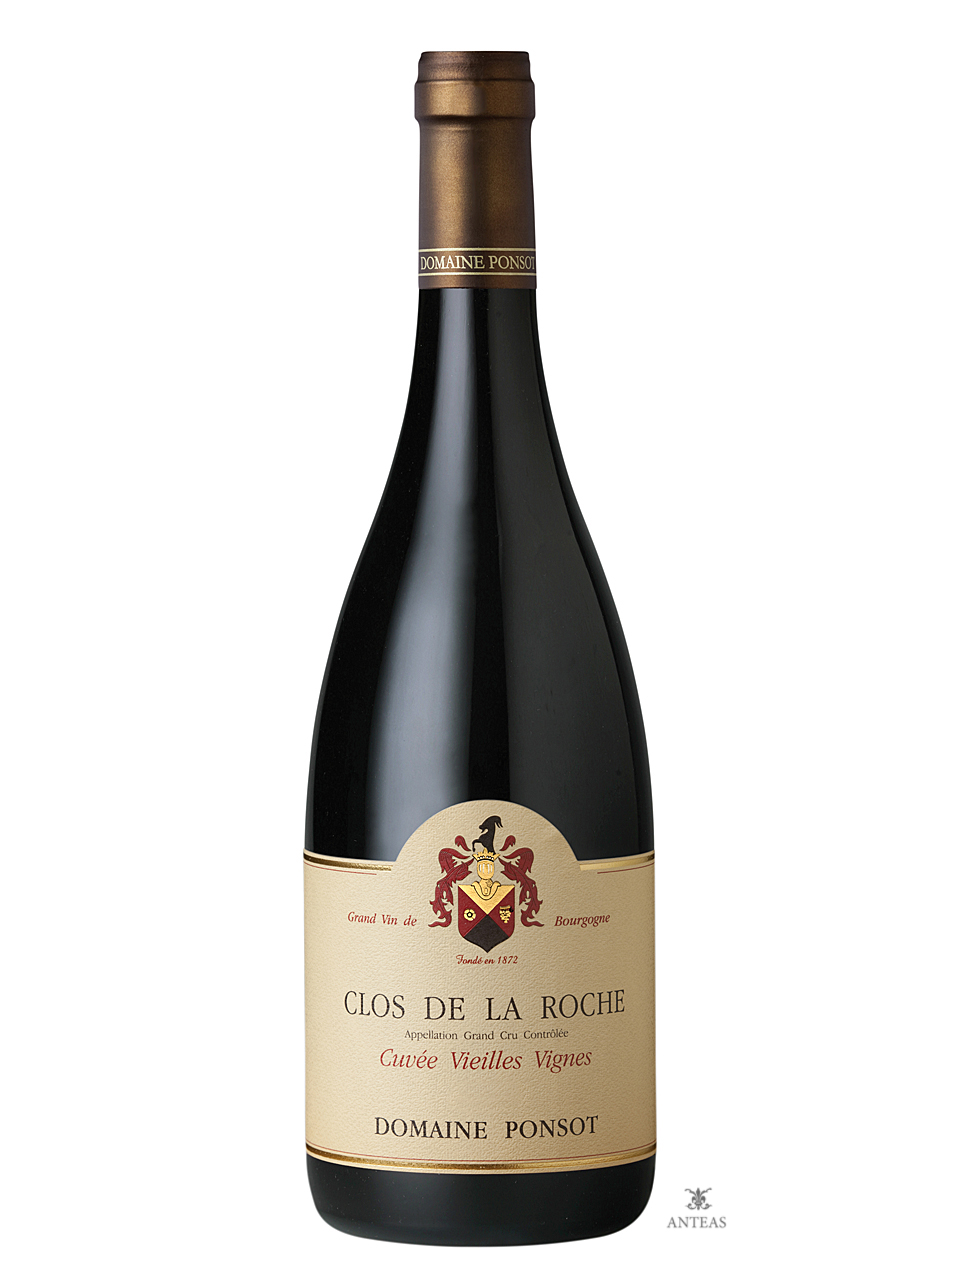 Domaine Ponsot – Clos de la Roche Cuvée Vieilles Vignes 2008